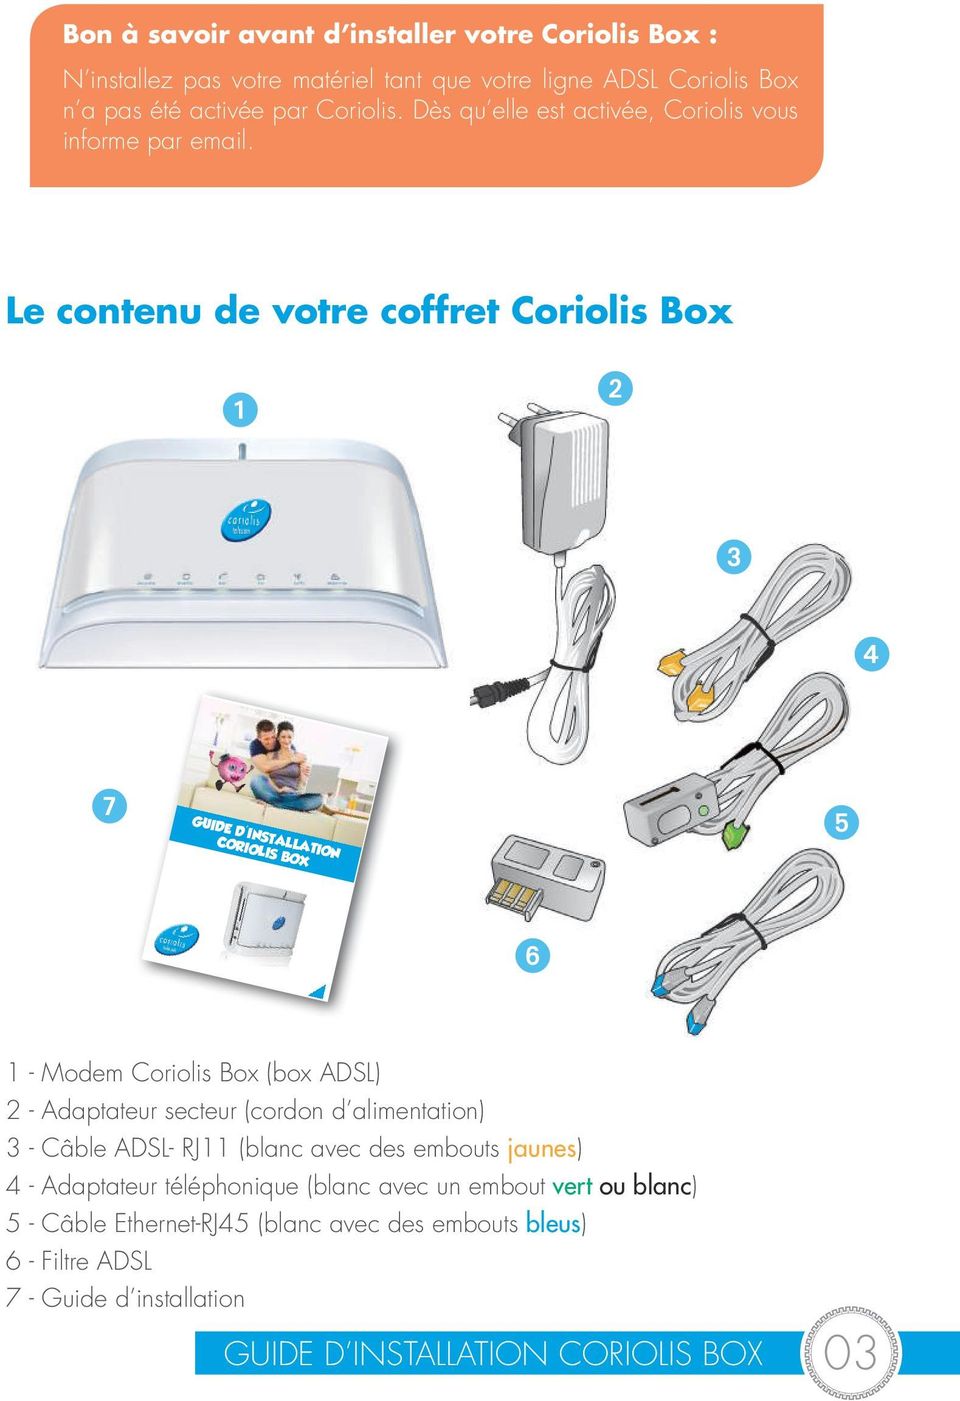 Le contenu de votre coffret Coriolis Box 1 2 3 4 7 GUIDE D'INSTALLATION CORIOLIS BOX 5 6 1 - Modem Coriolis Box (box ADSL) 2 - Adaptateur secteur (cordon d